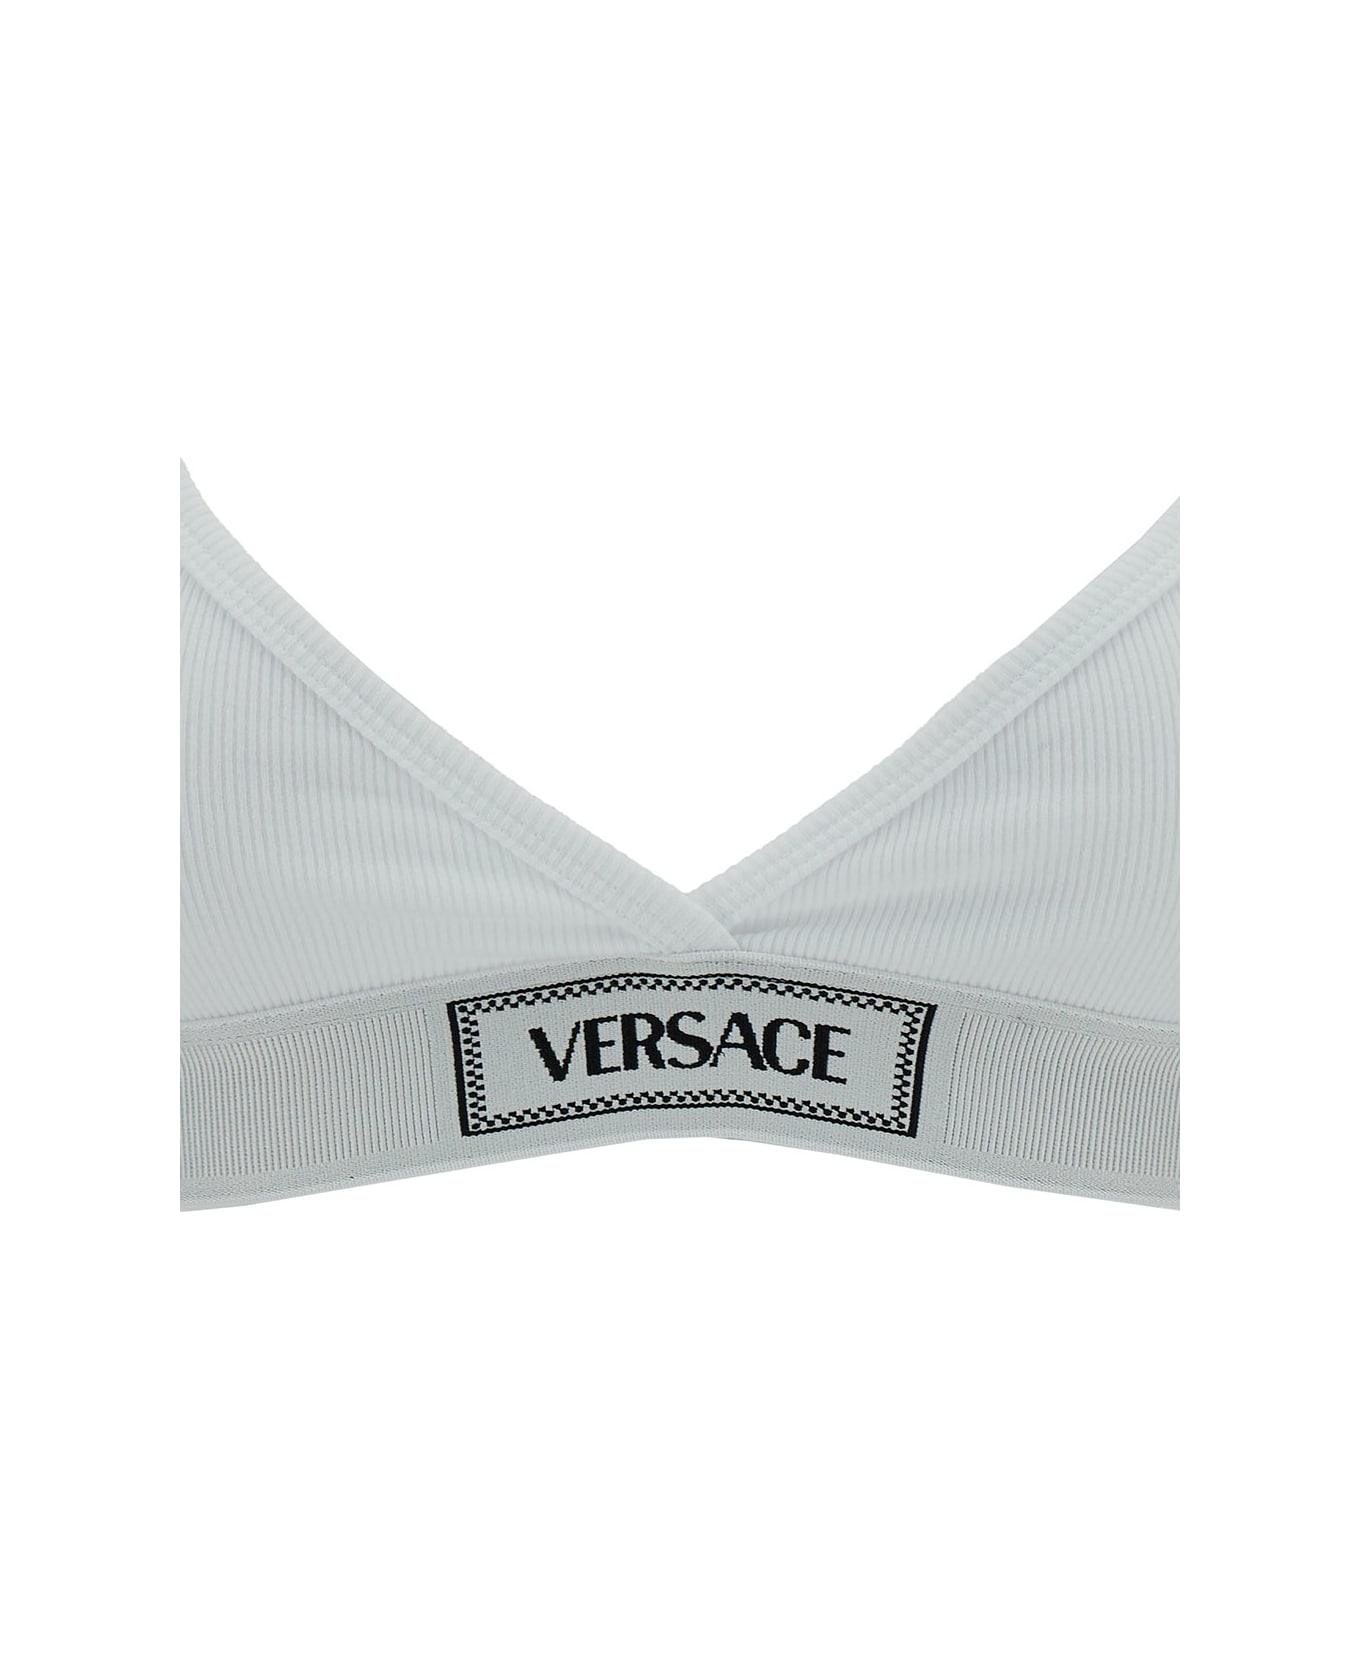 Versace Underwear Cotton Top - White